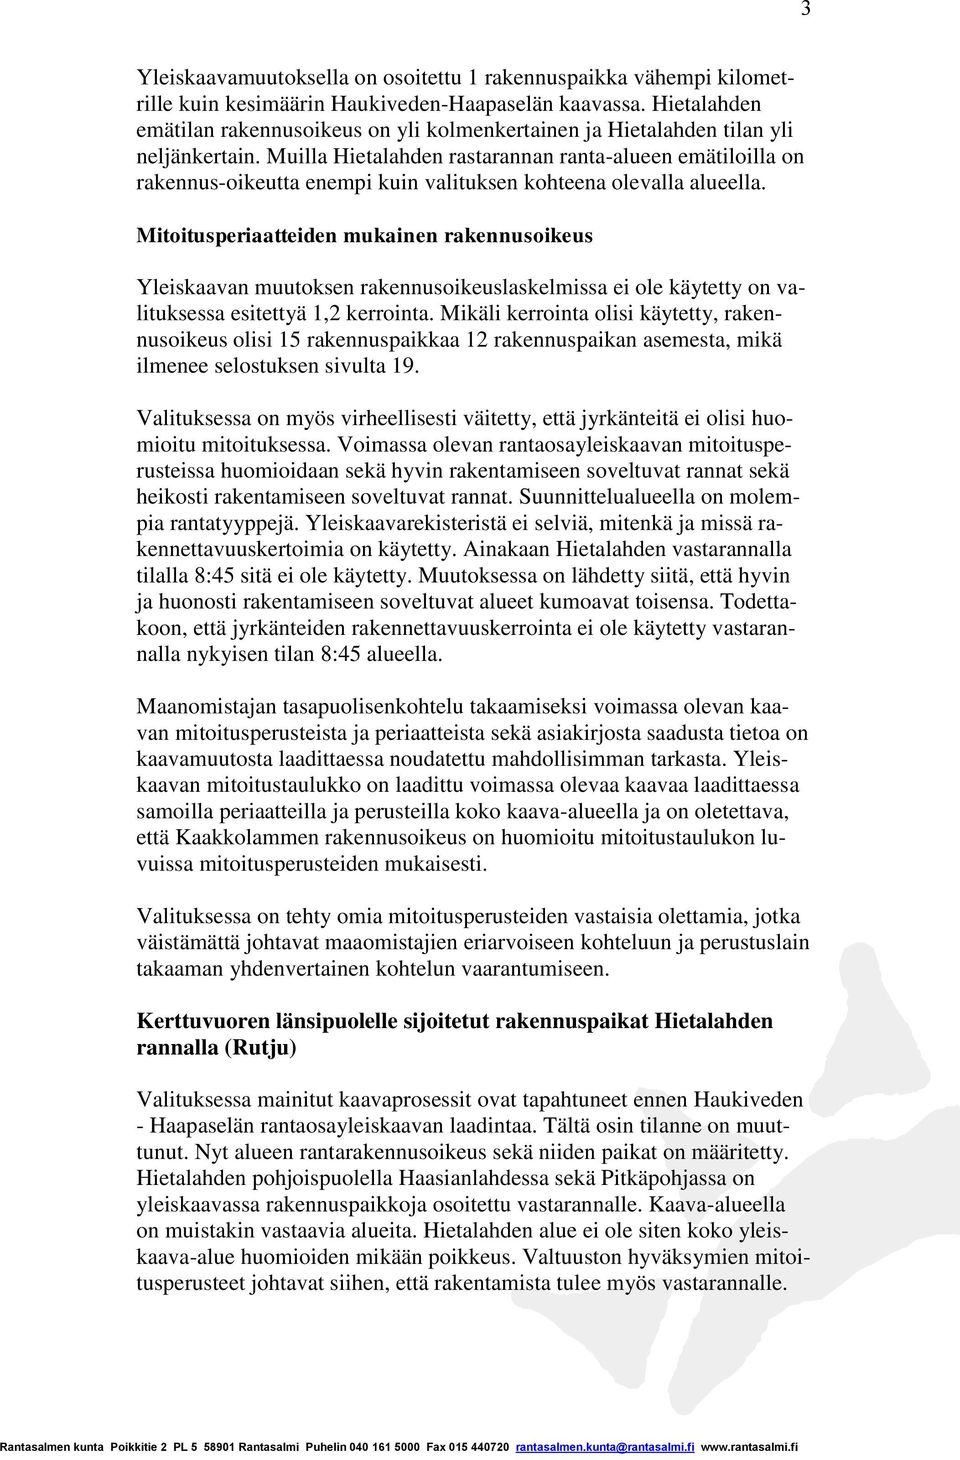 Muilla Hietalahden rastarannan ranta-alueen emätiloilla on rakennus-oikeutta enempi kuin valituksen kohteena olevalla alueella.